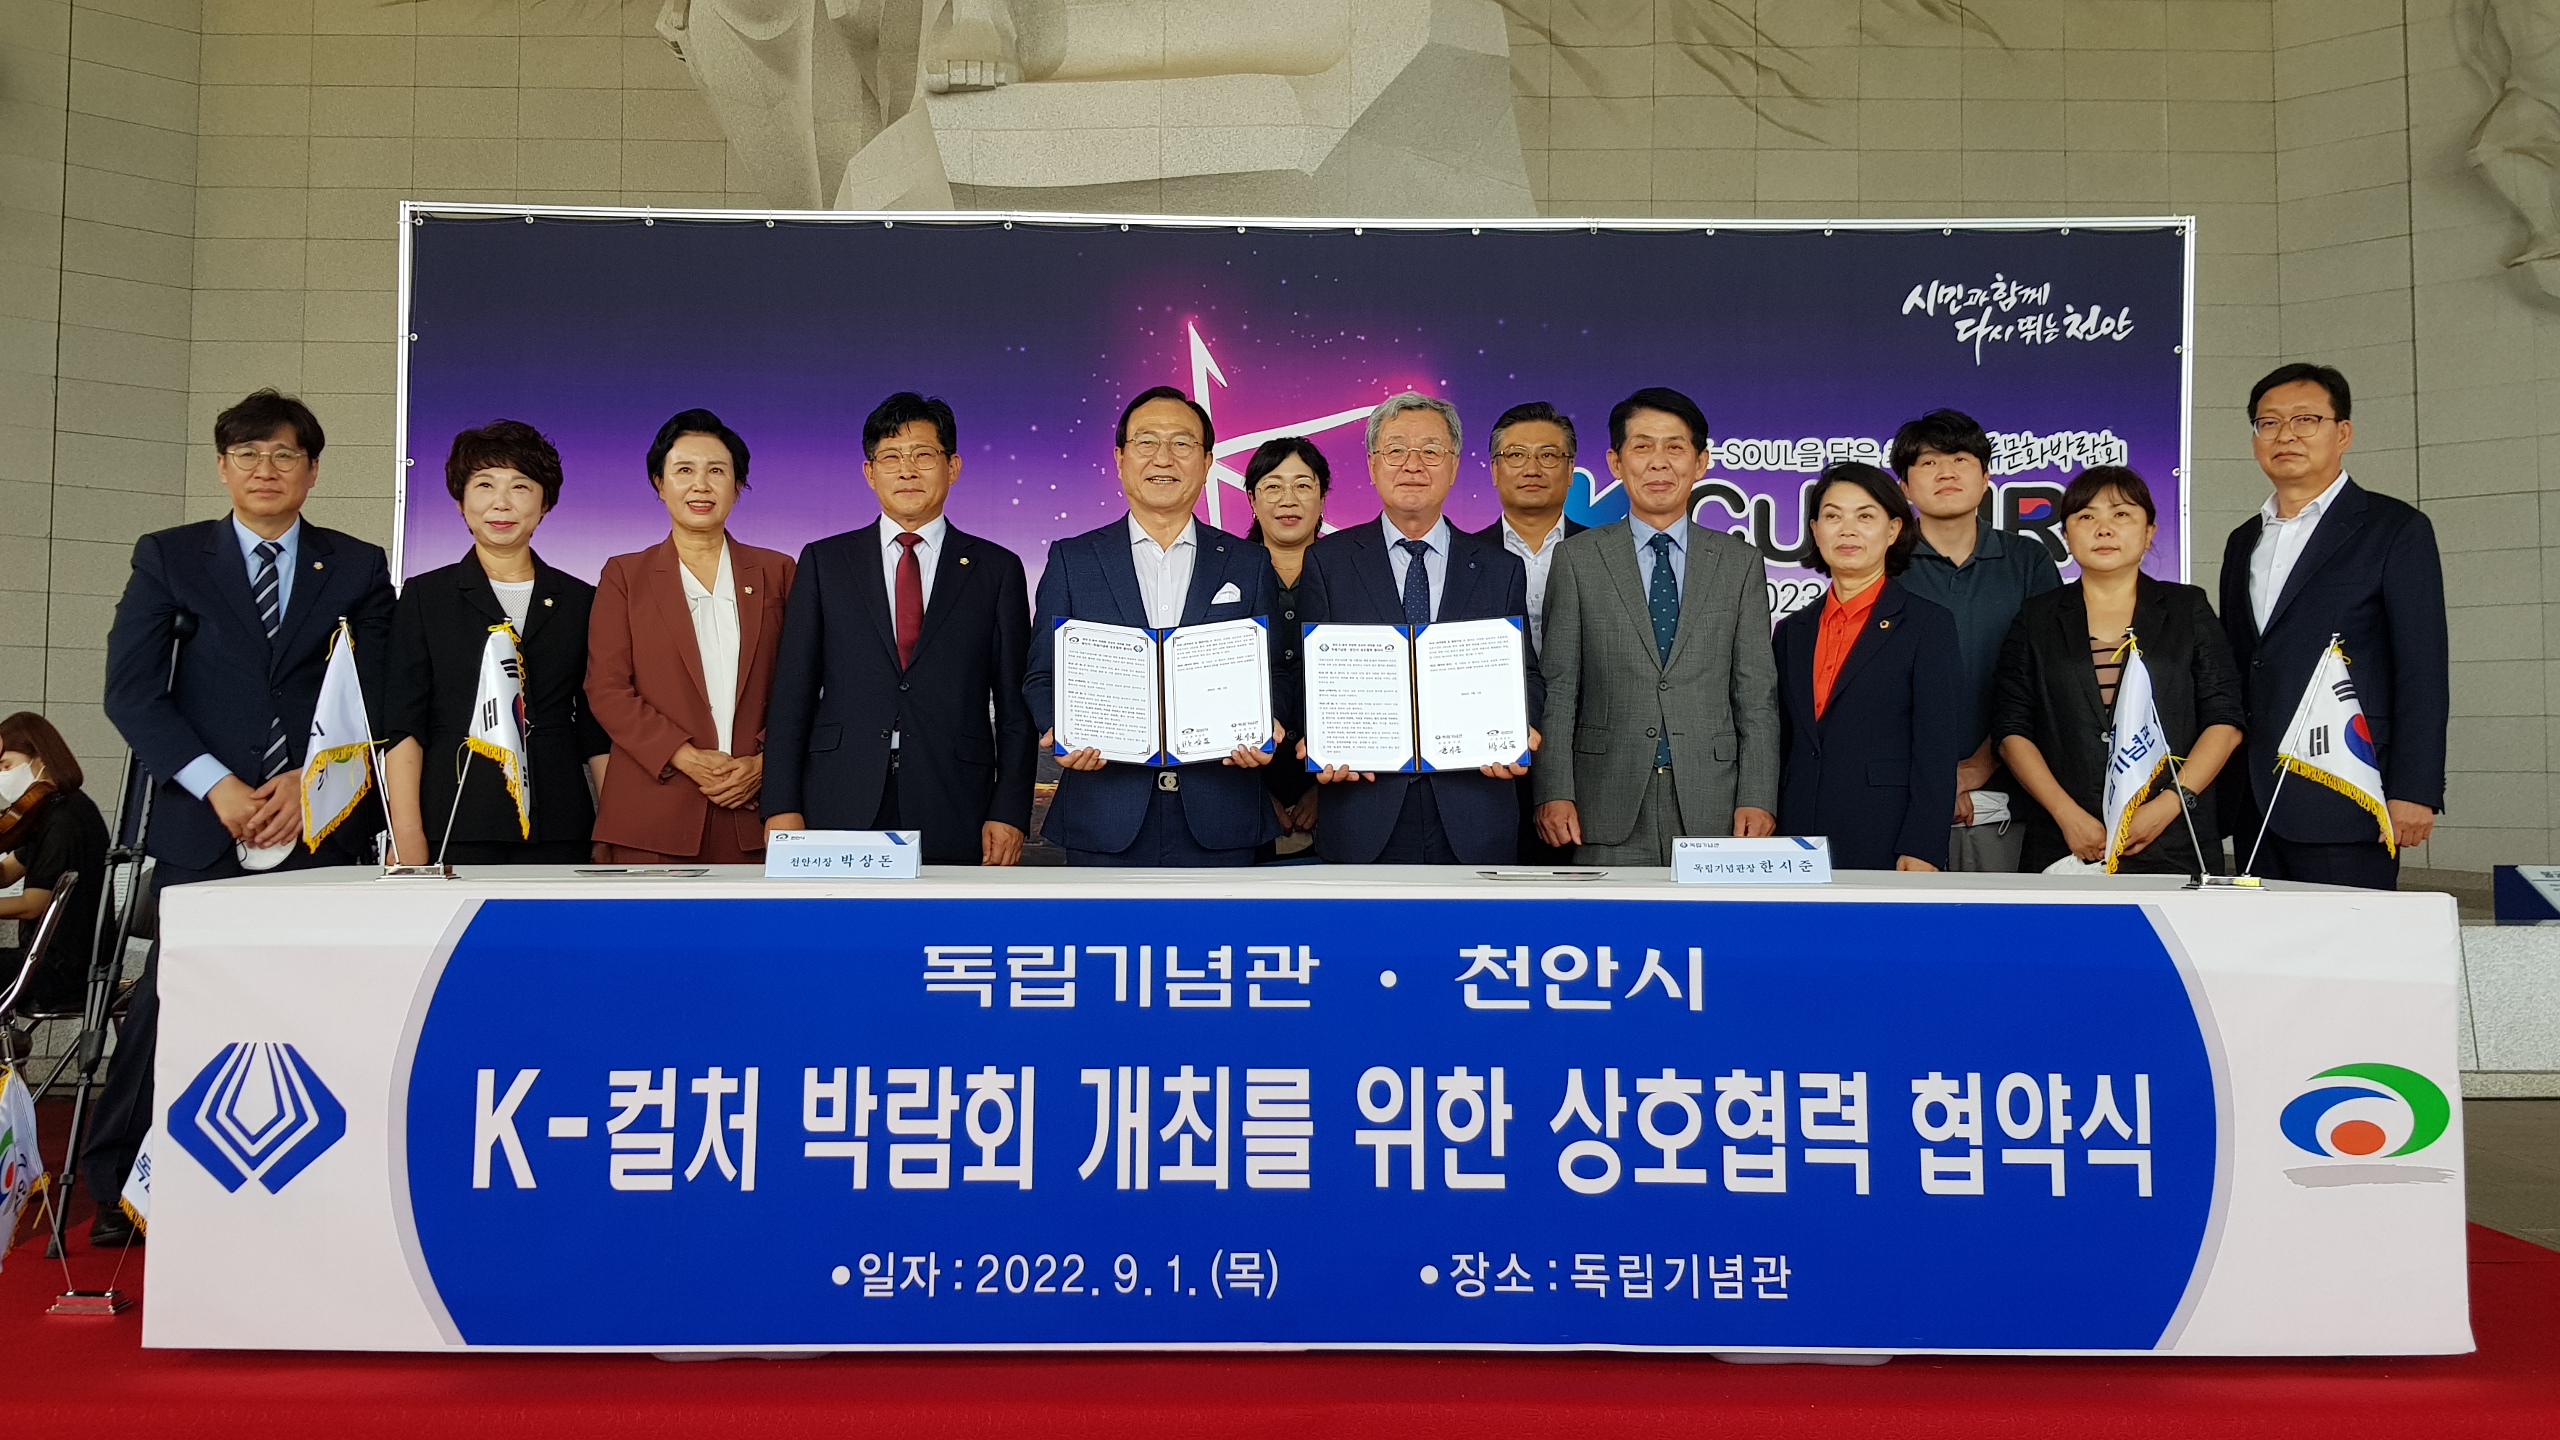 천안시와 ‘K-컬처 박람회’ 개최 상호협력을 위한 양해각서 체결